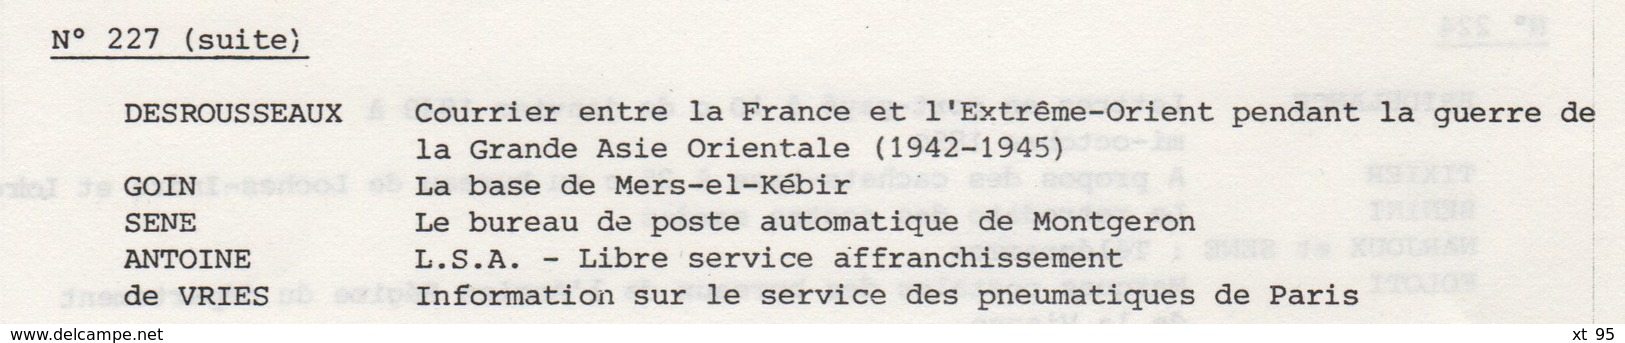 Les Feuilles Marcophiles - N°227 - Voir Sommaire - Frais De Port 2€ - Filatelia E Storia Postale